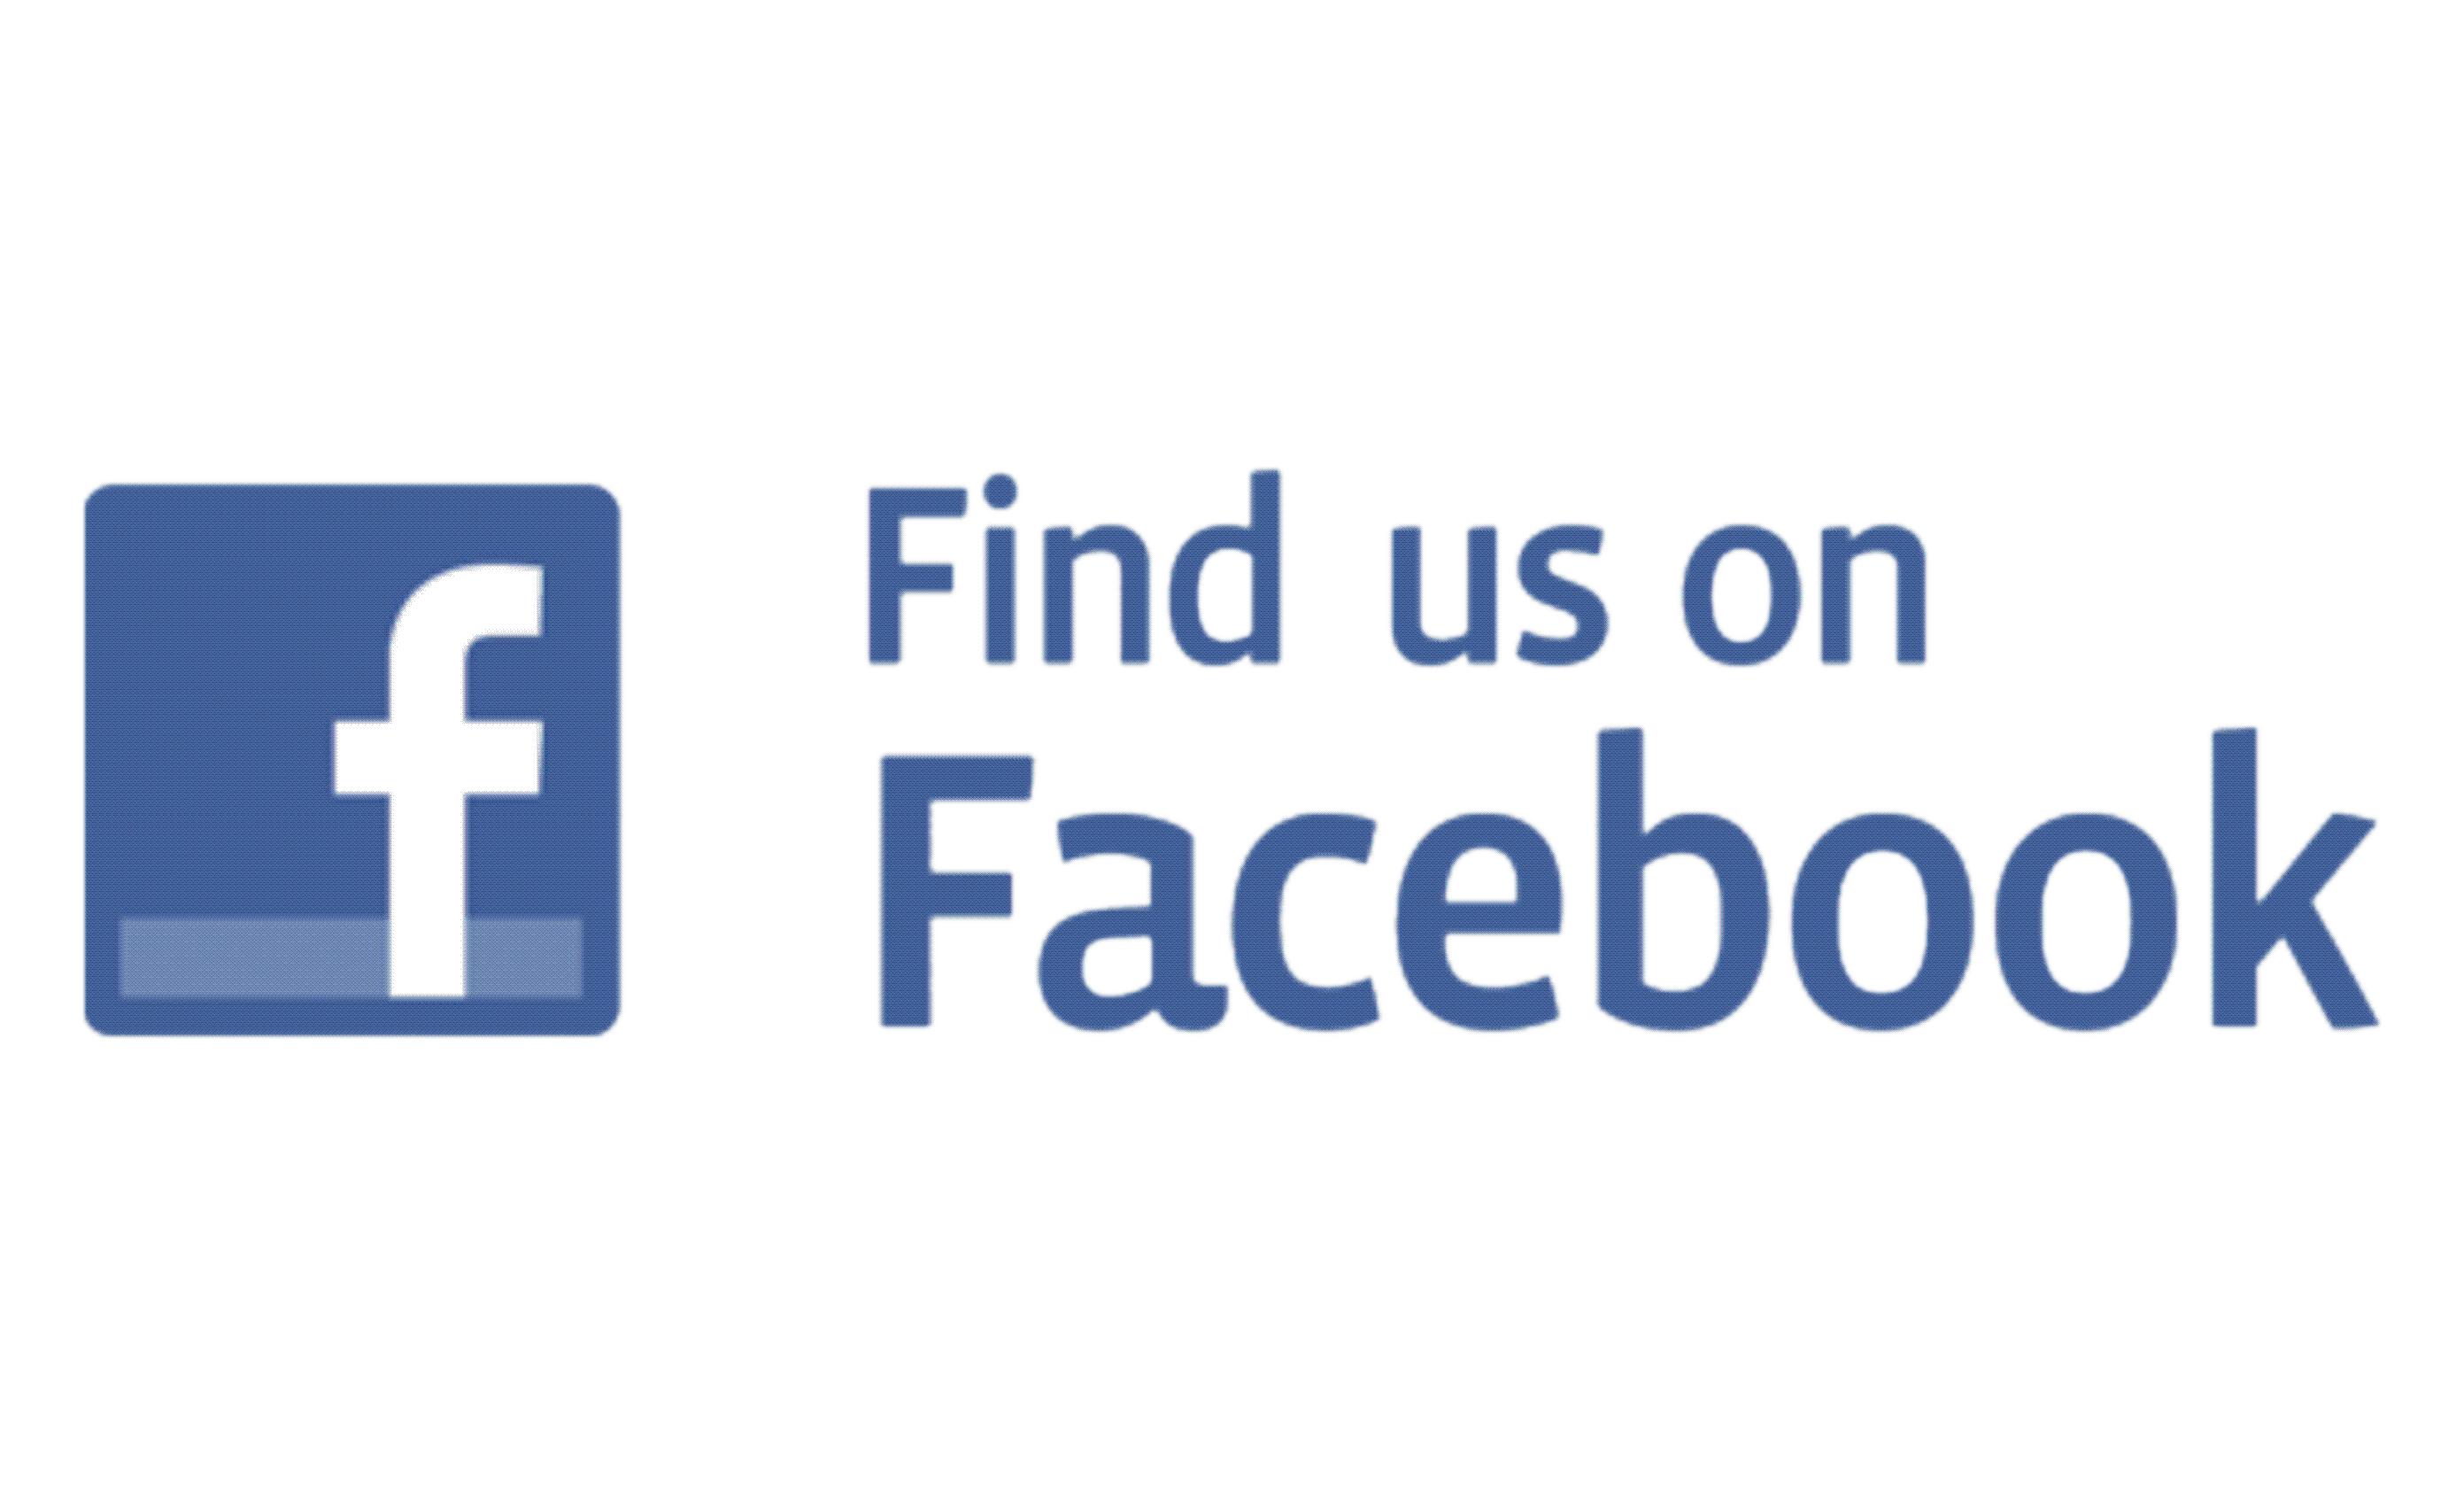 Find us on Facebook Logo PNG Image